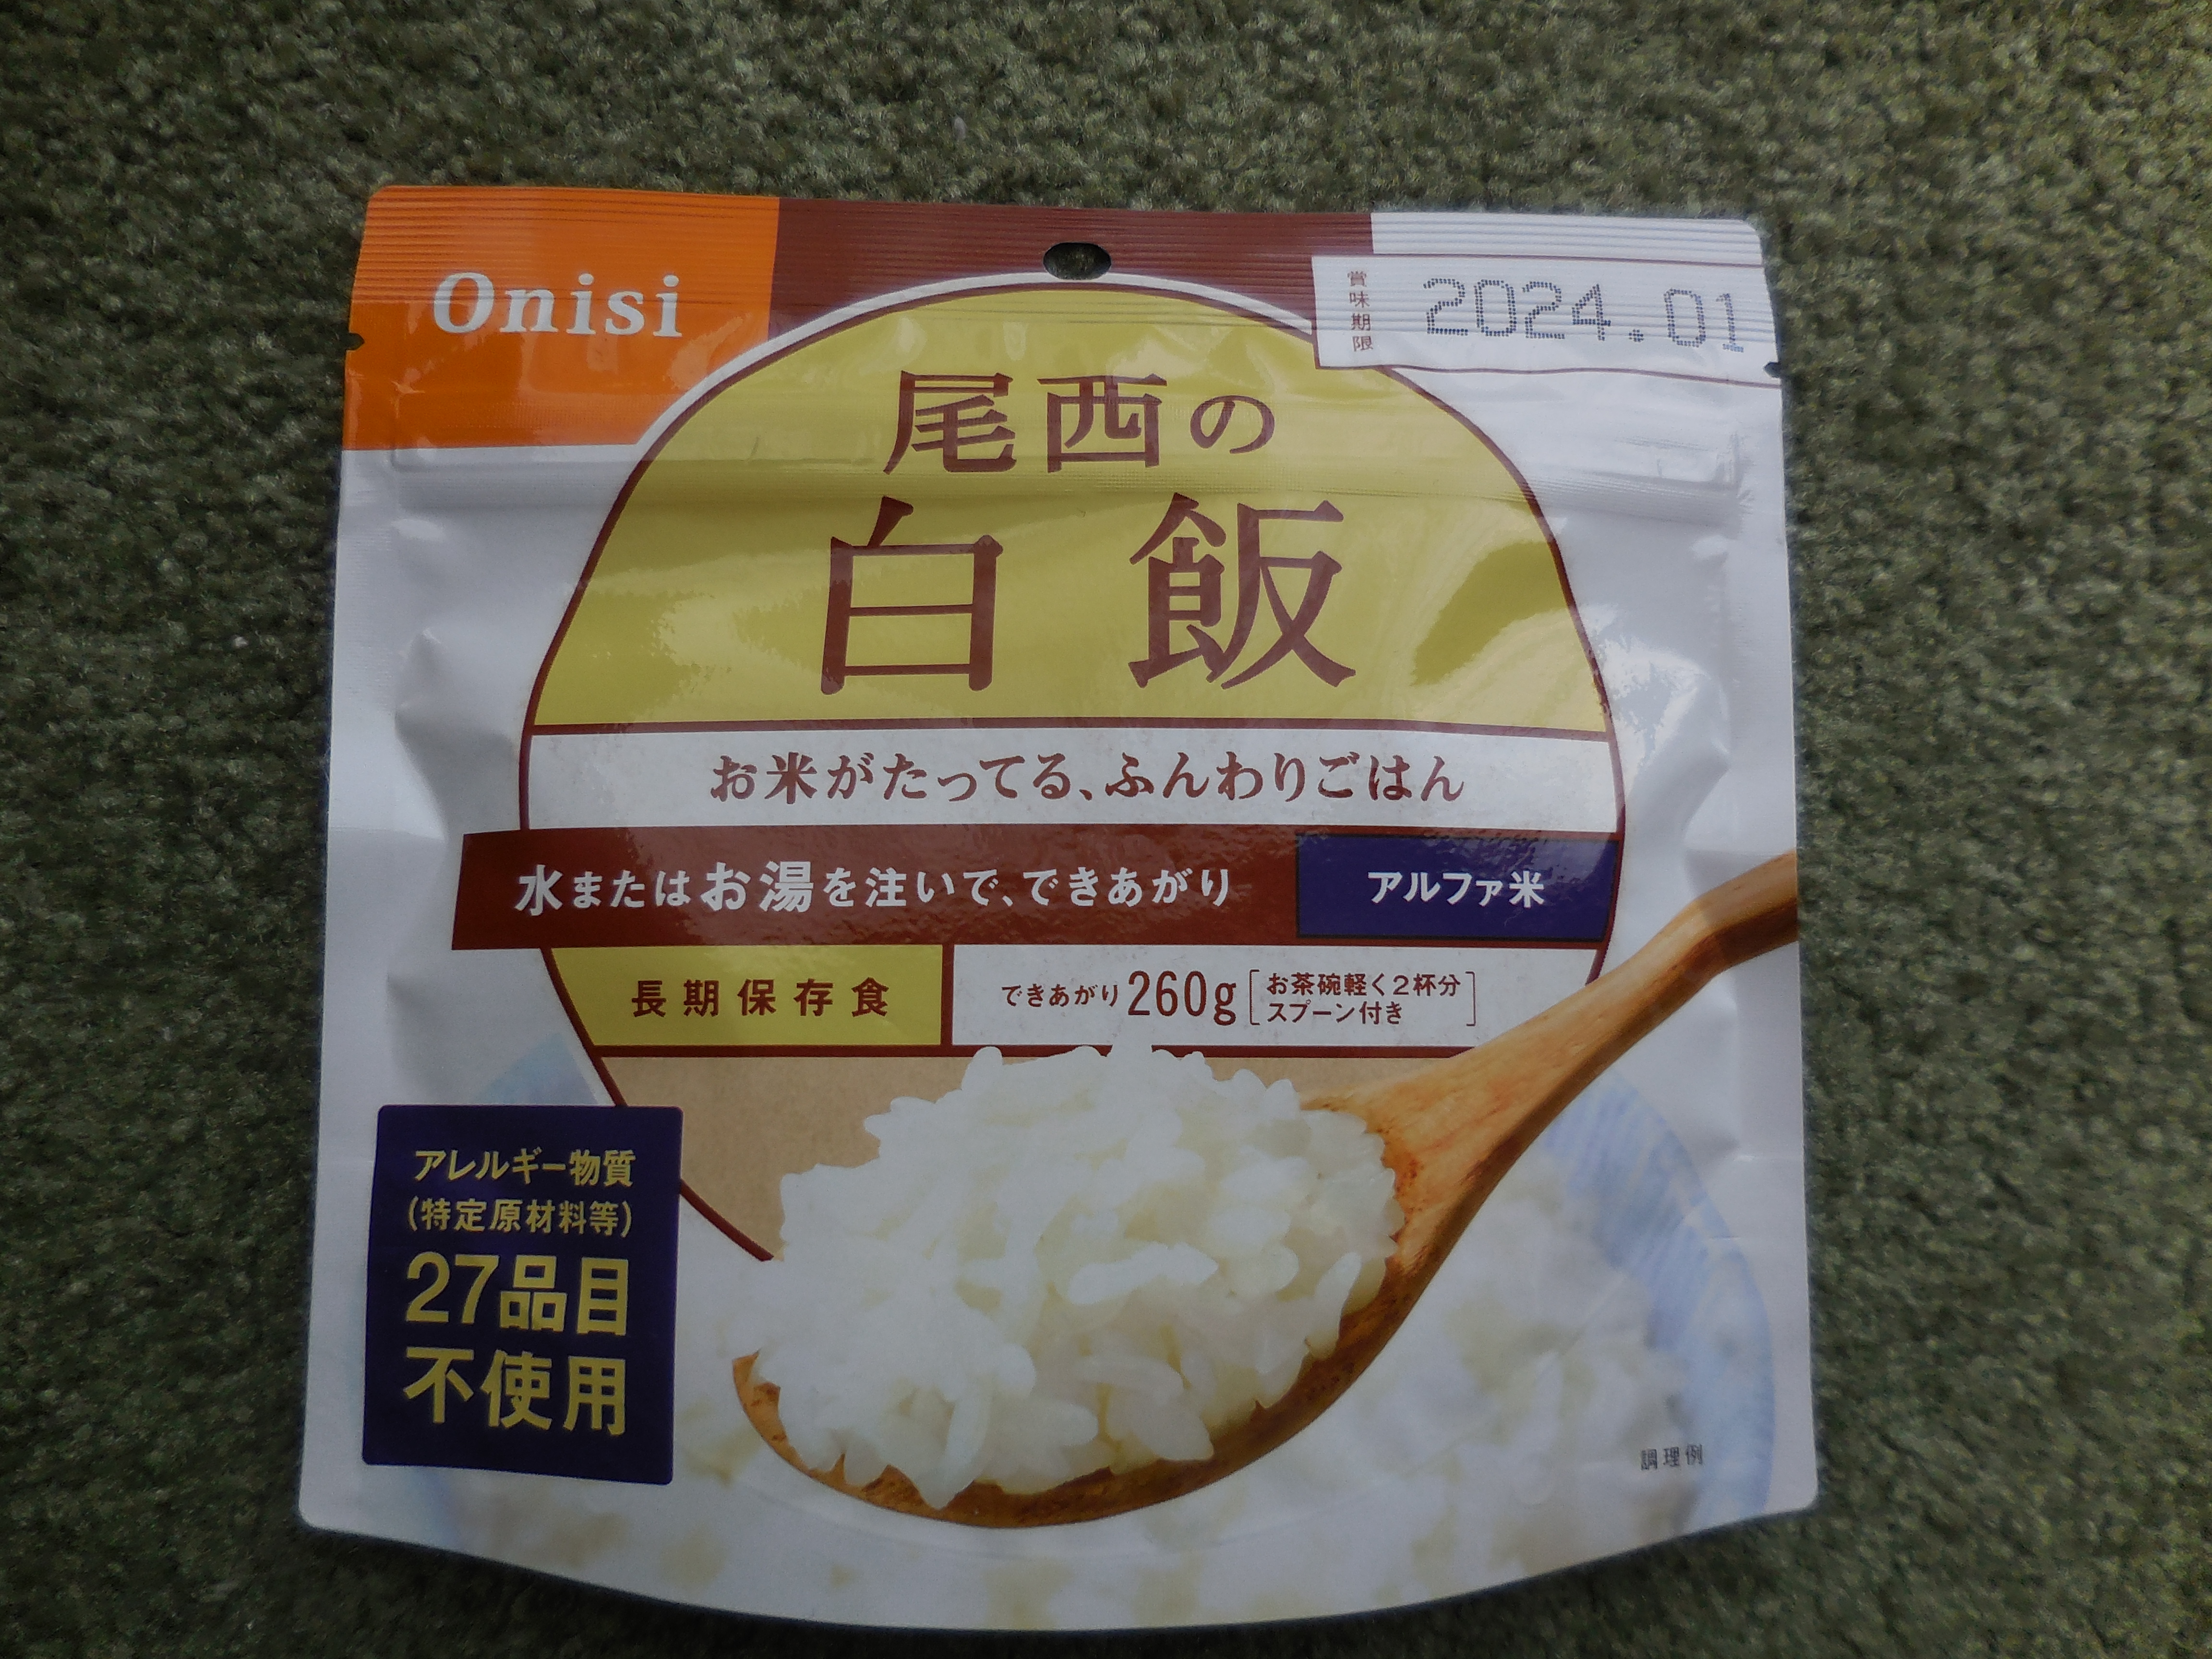 防災用品の非常食アルファ米はどこに売っている?「尾西の白飯」ブログ 